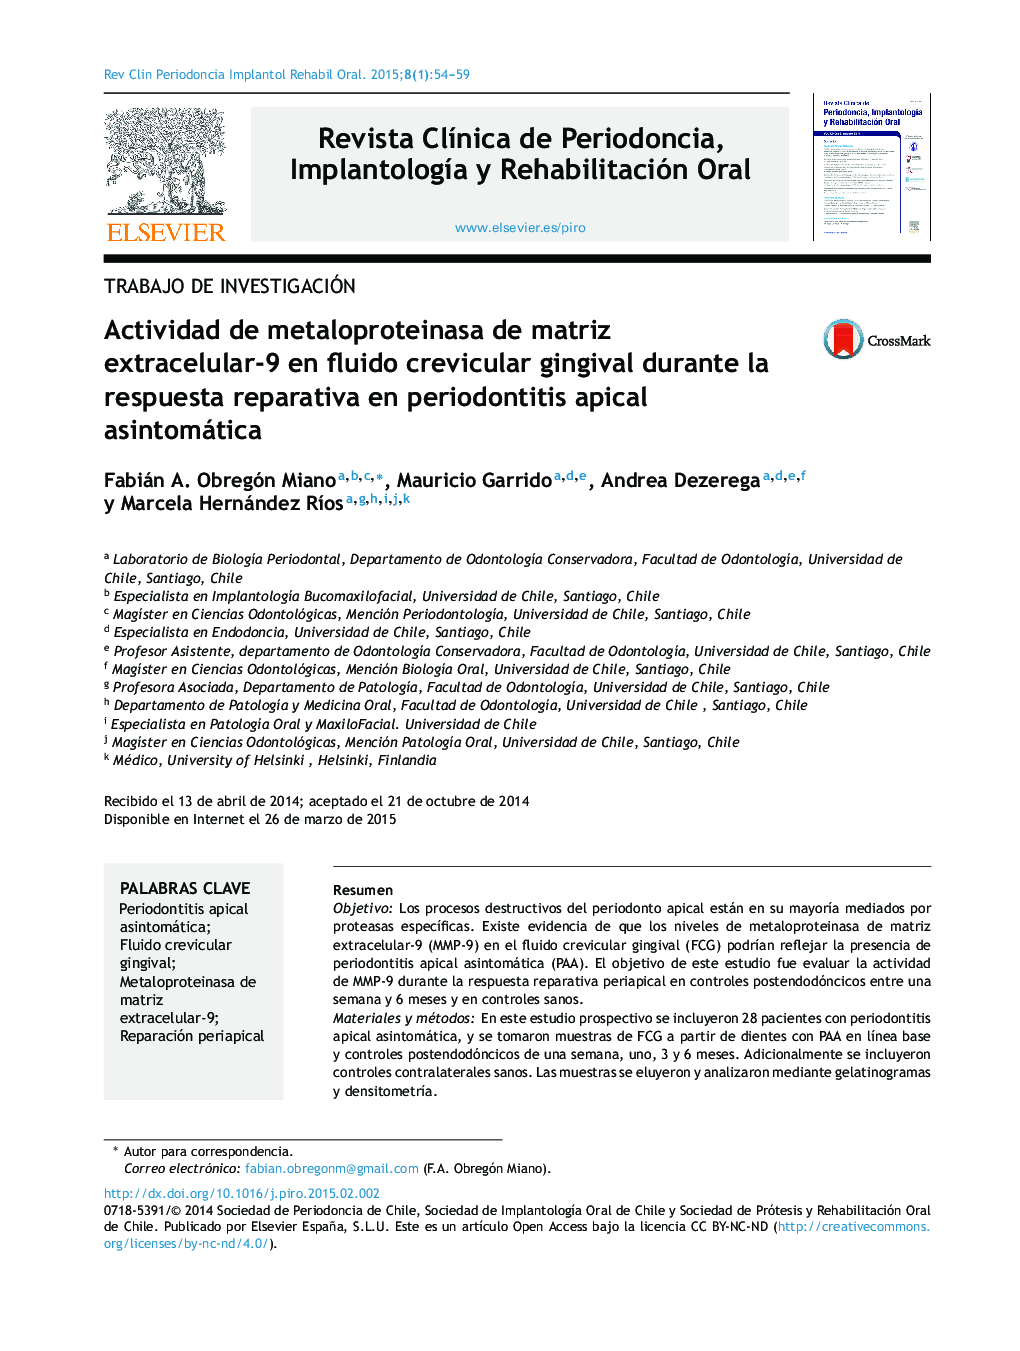 Actividad de metaloproteinasa de matriz extracelular-9 en fluido crevicular gingival durante la respuesta reparativa en periodontitis apical asintomática